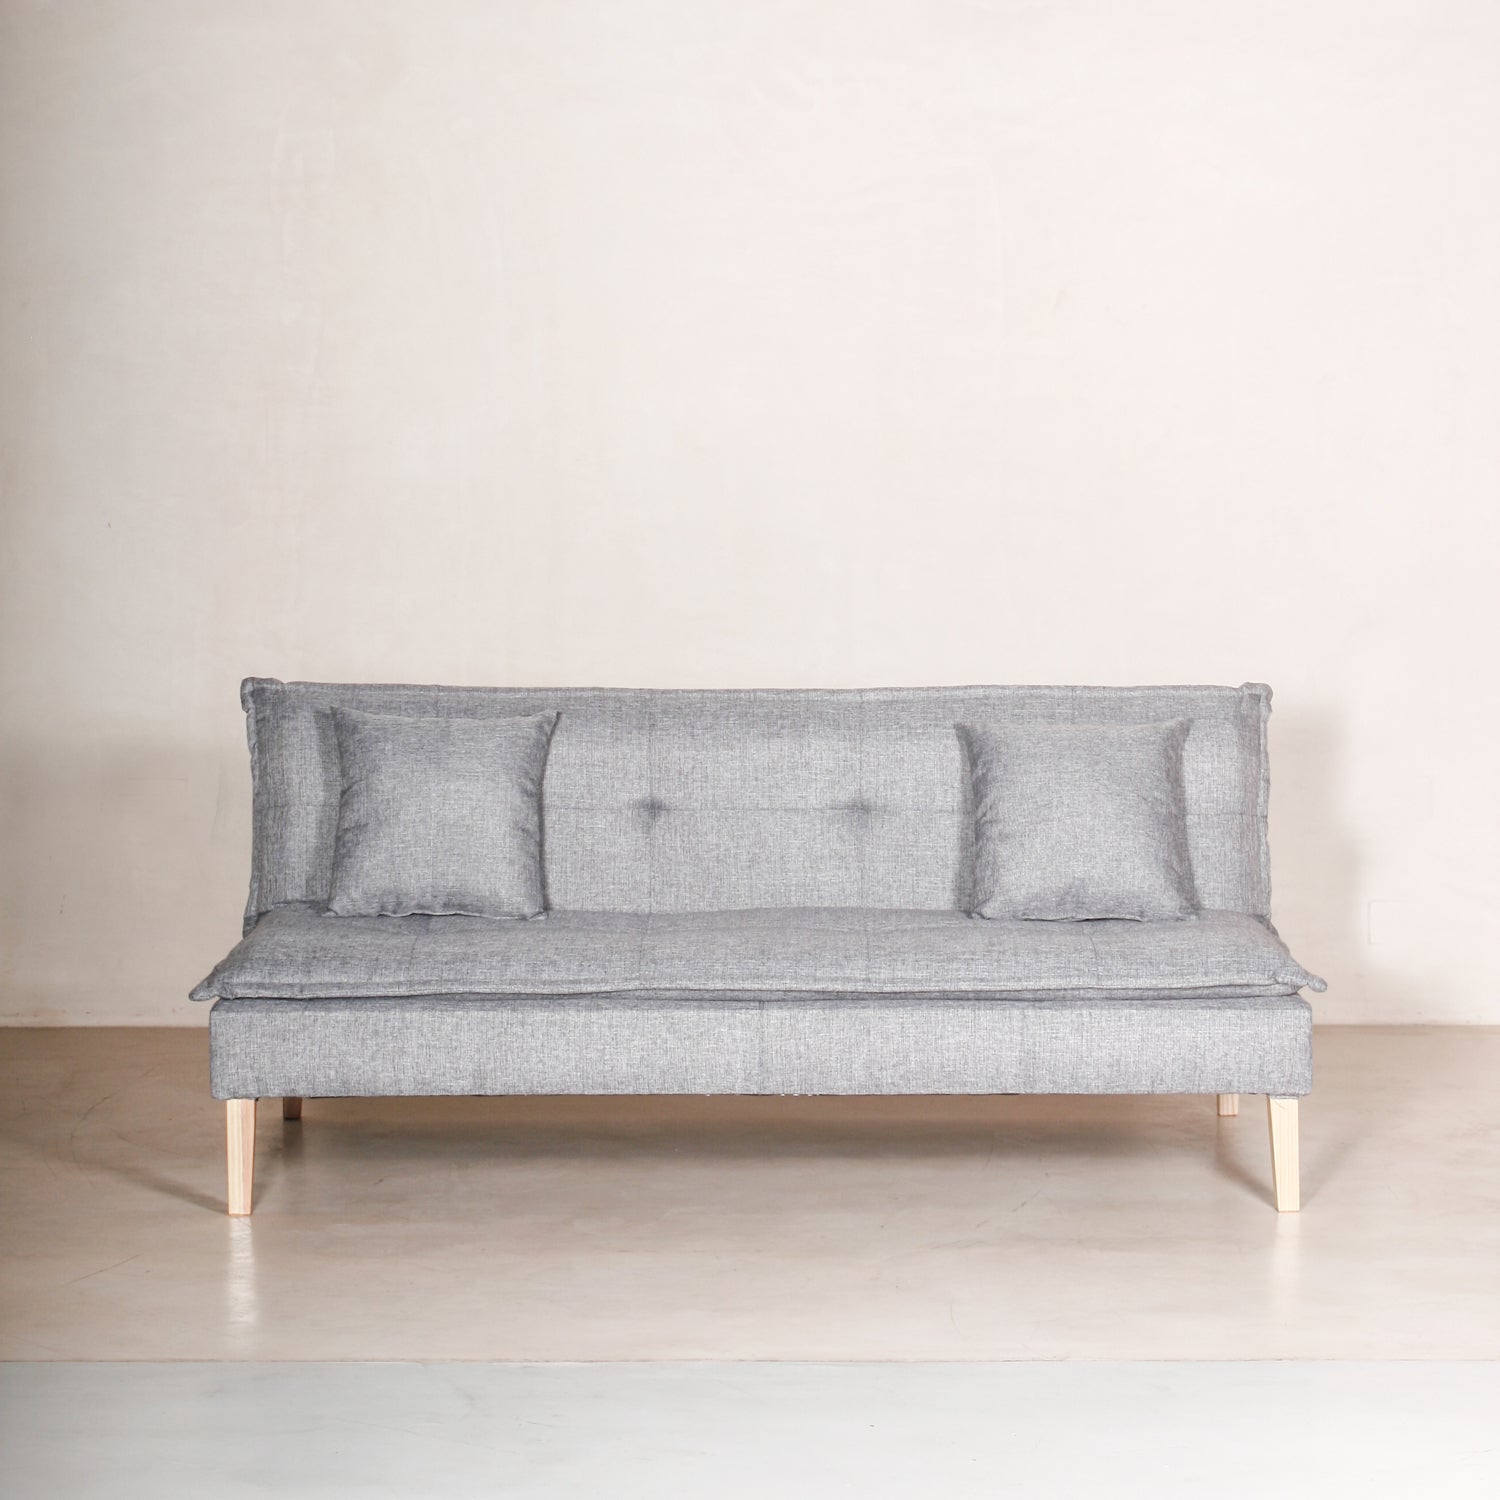 sofá cama carmen de tela color gris